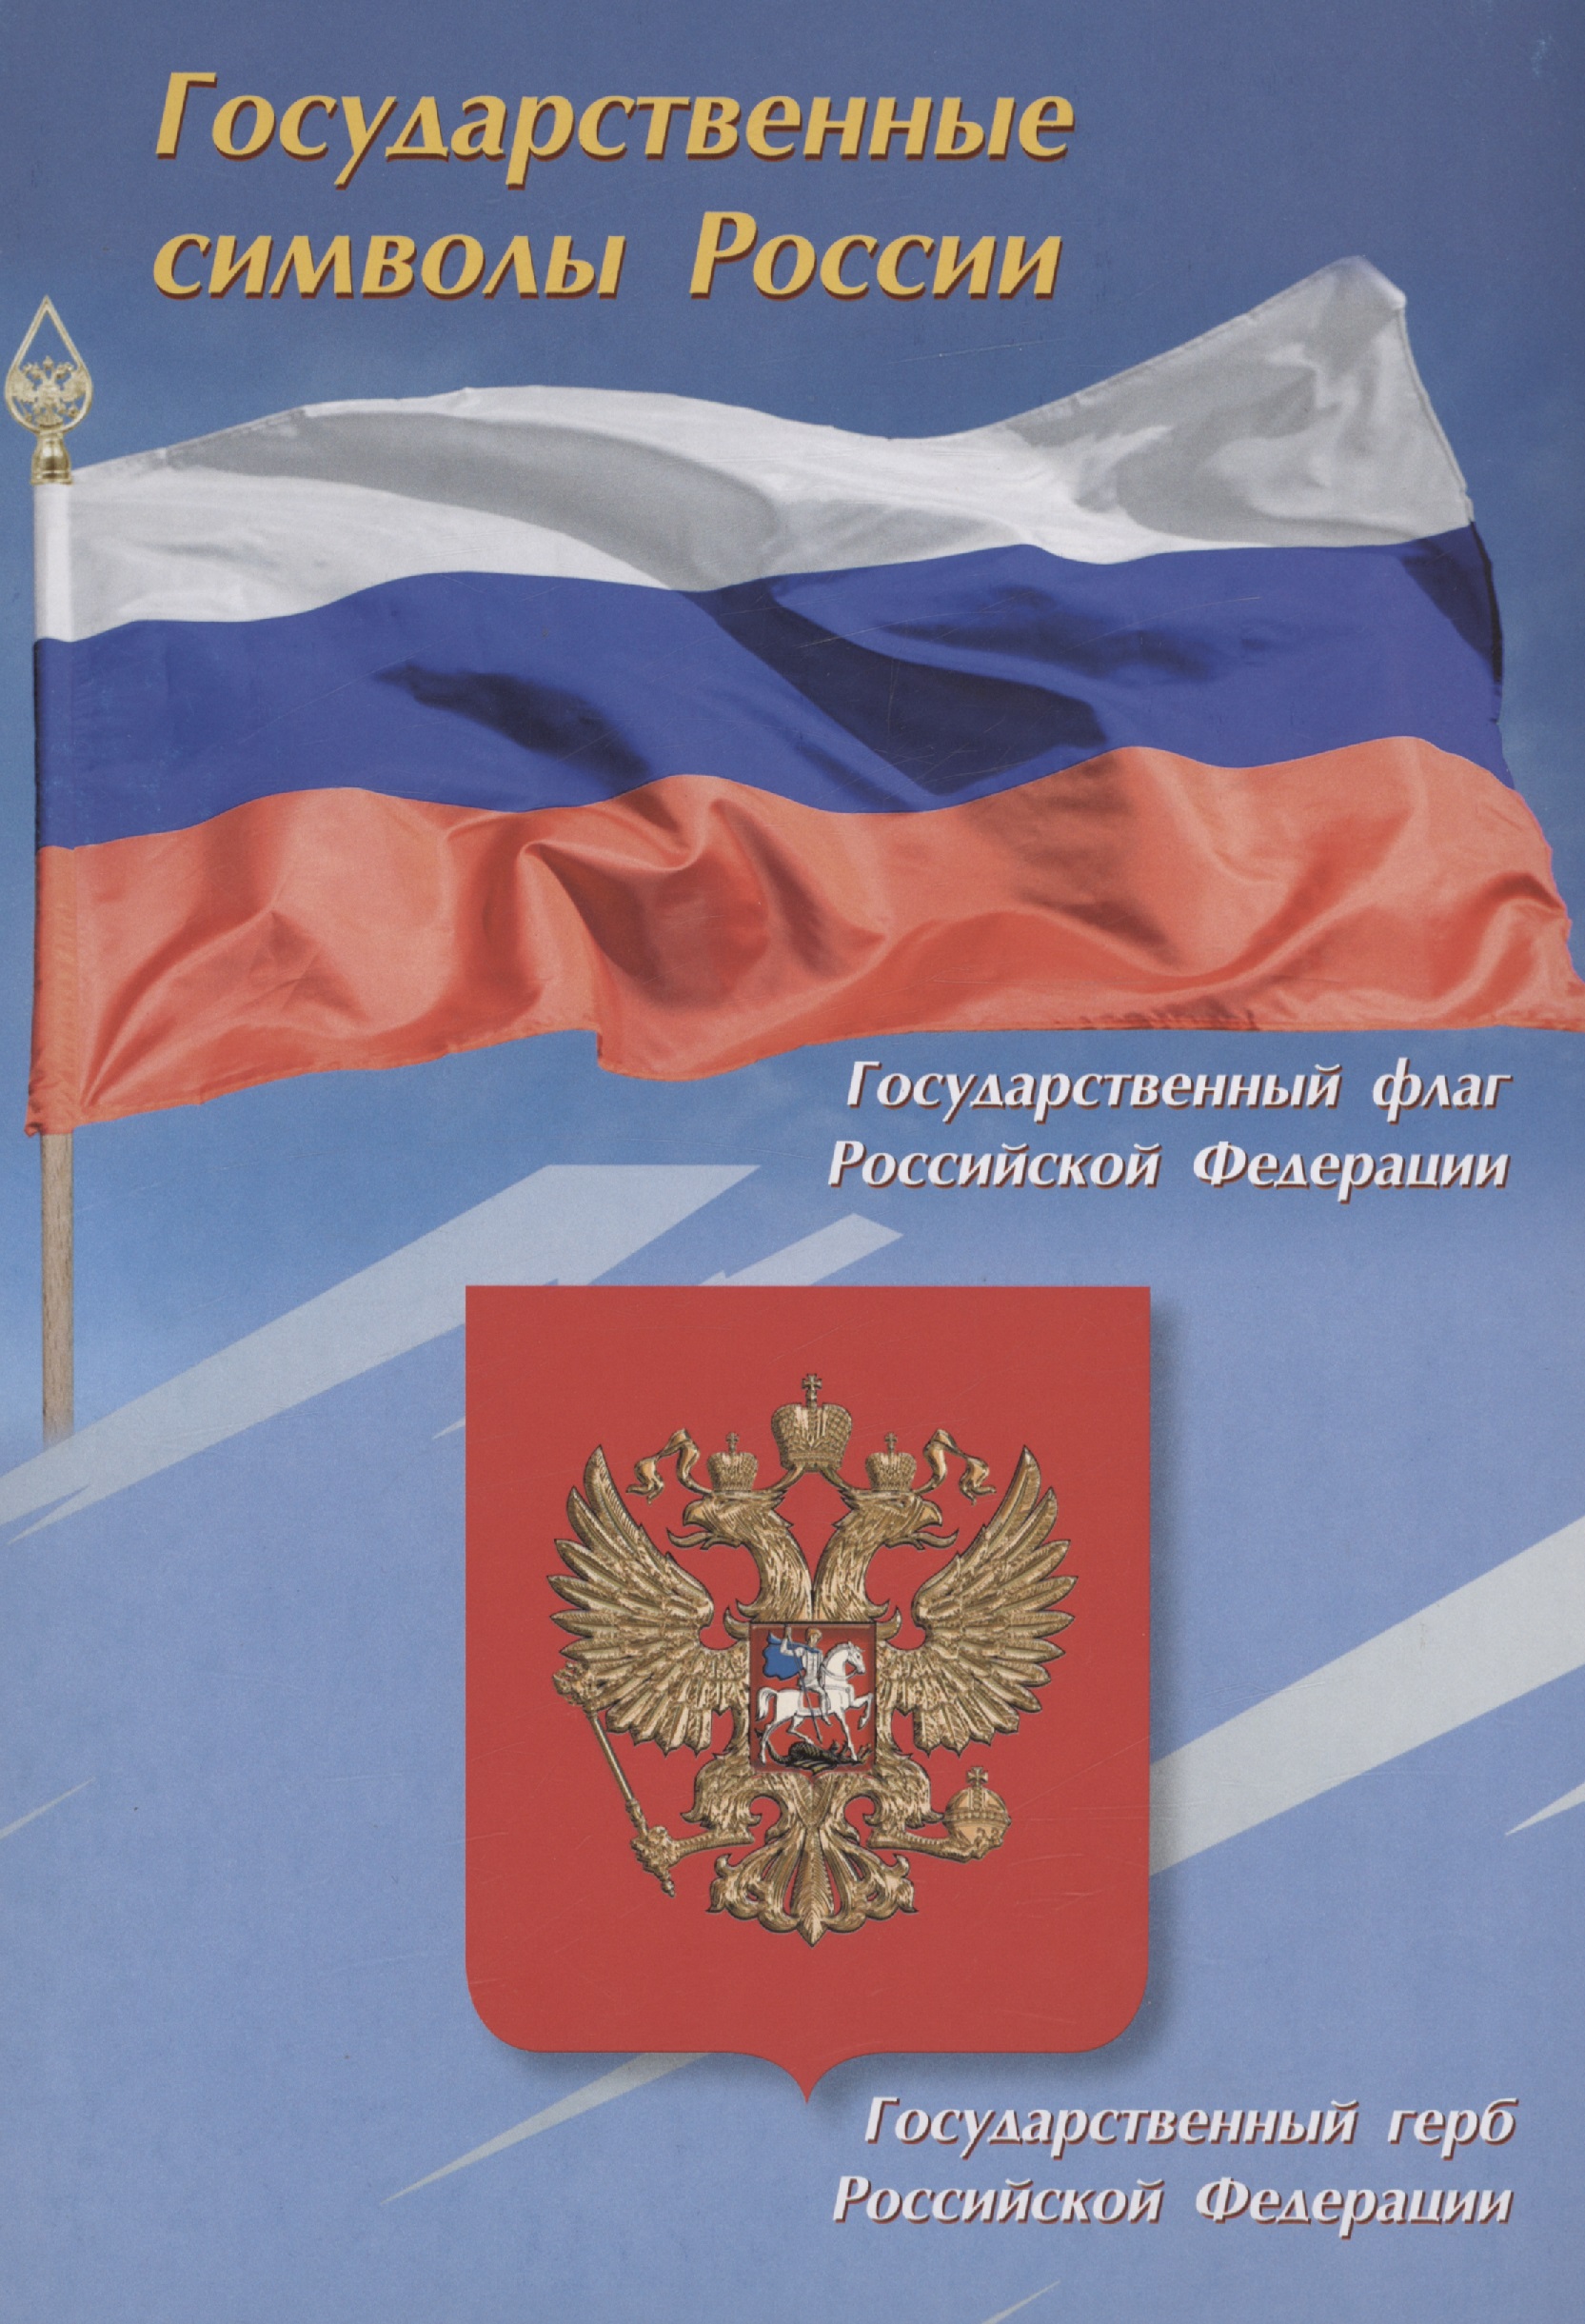 Тематический плакат. Государственные символы России плакат герб российской федерации 29 х 21 см